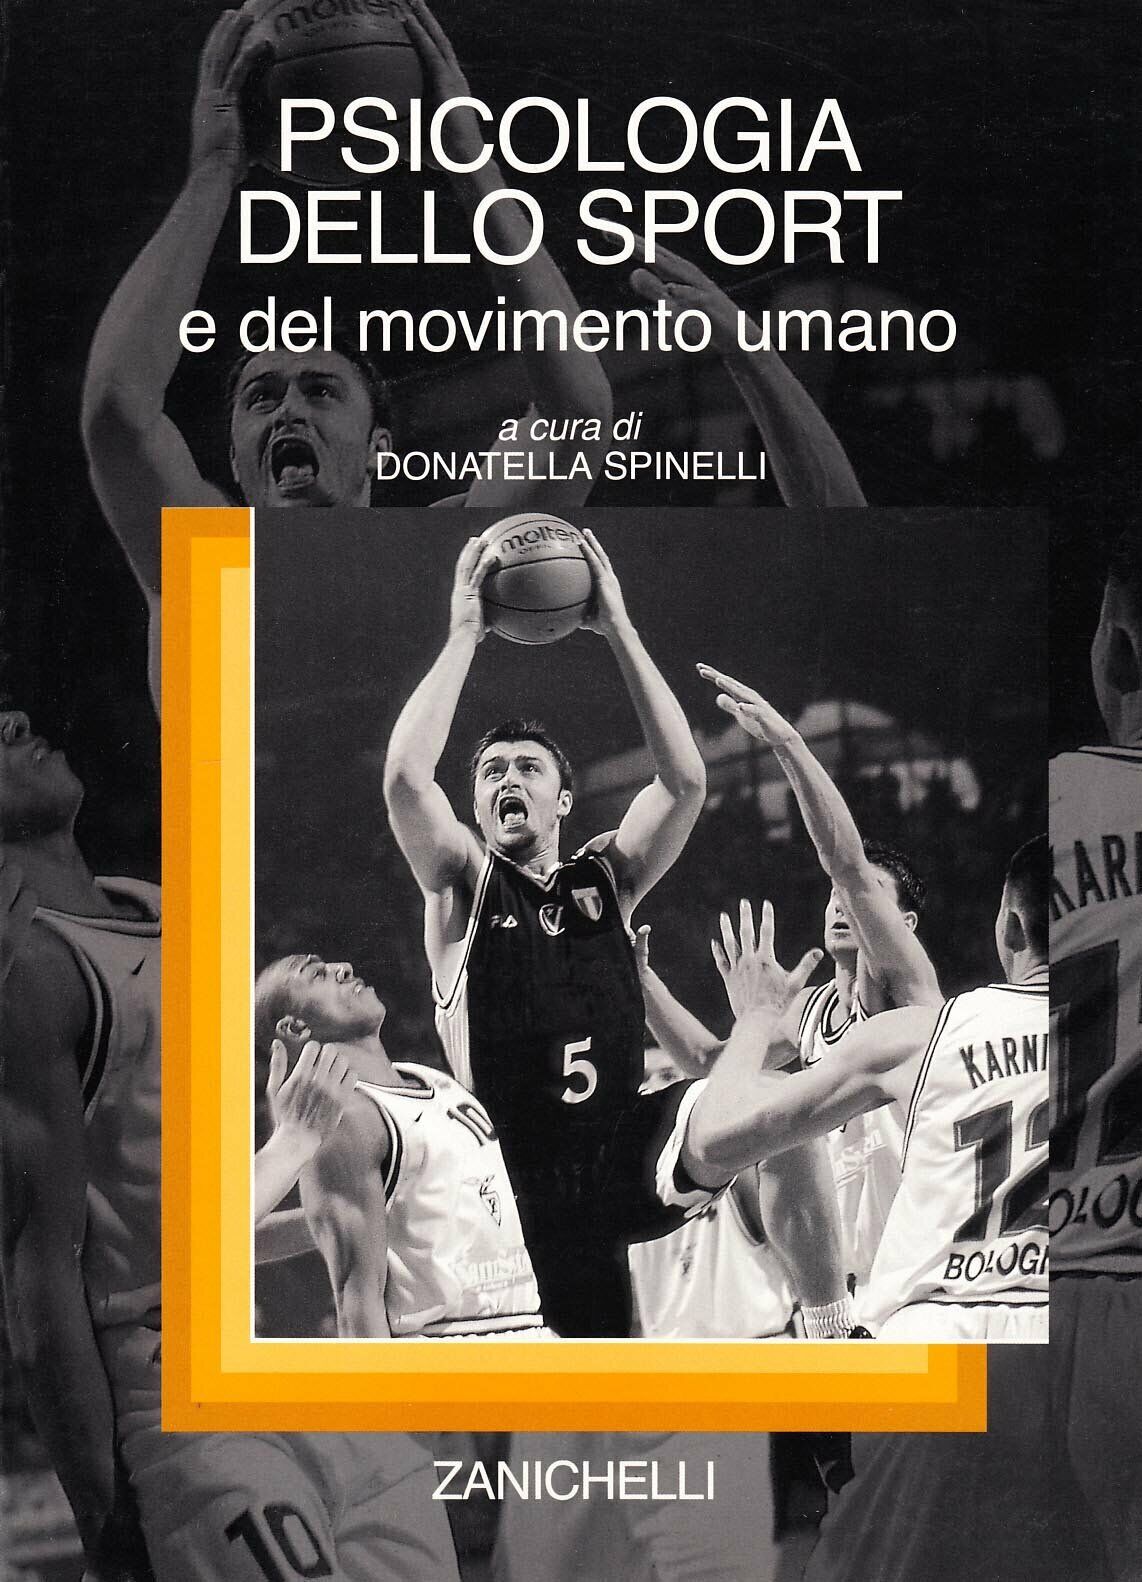 Psicologia dello sport e del movimento umano - D. Spinelli  - Zanichelli, 2002